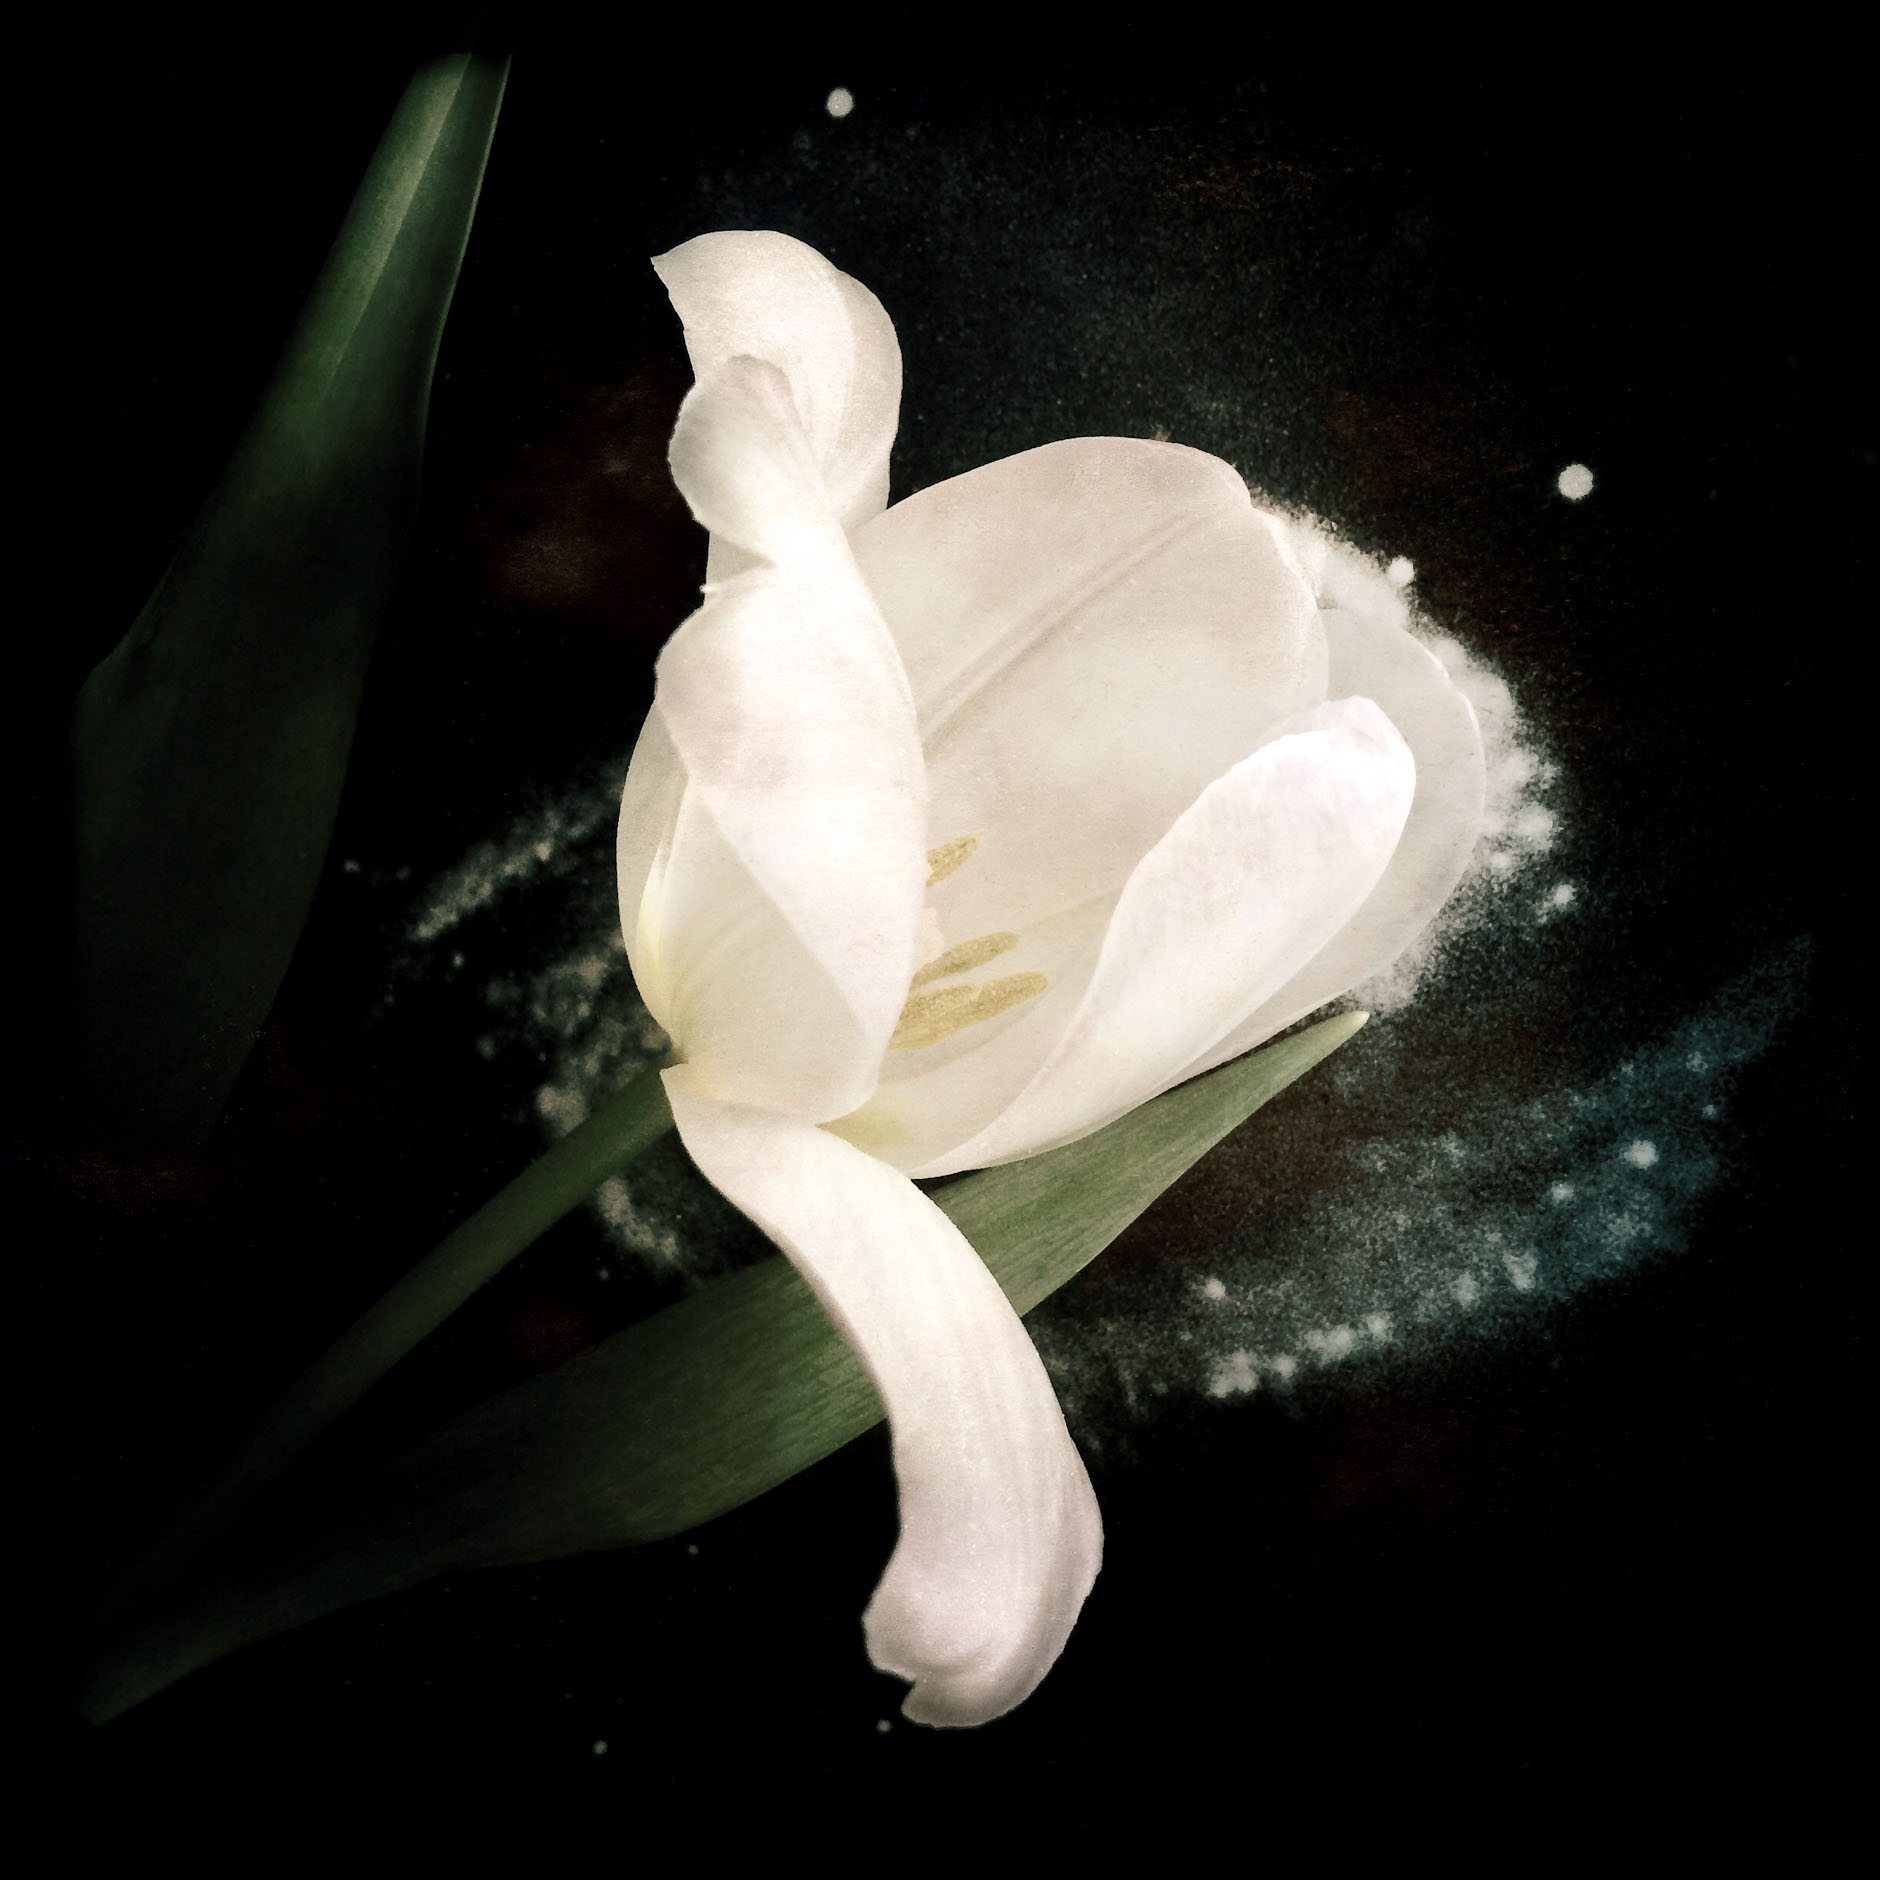 where I stand white tulip9707-72dpi_